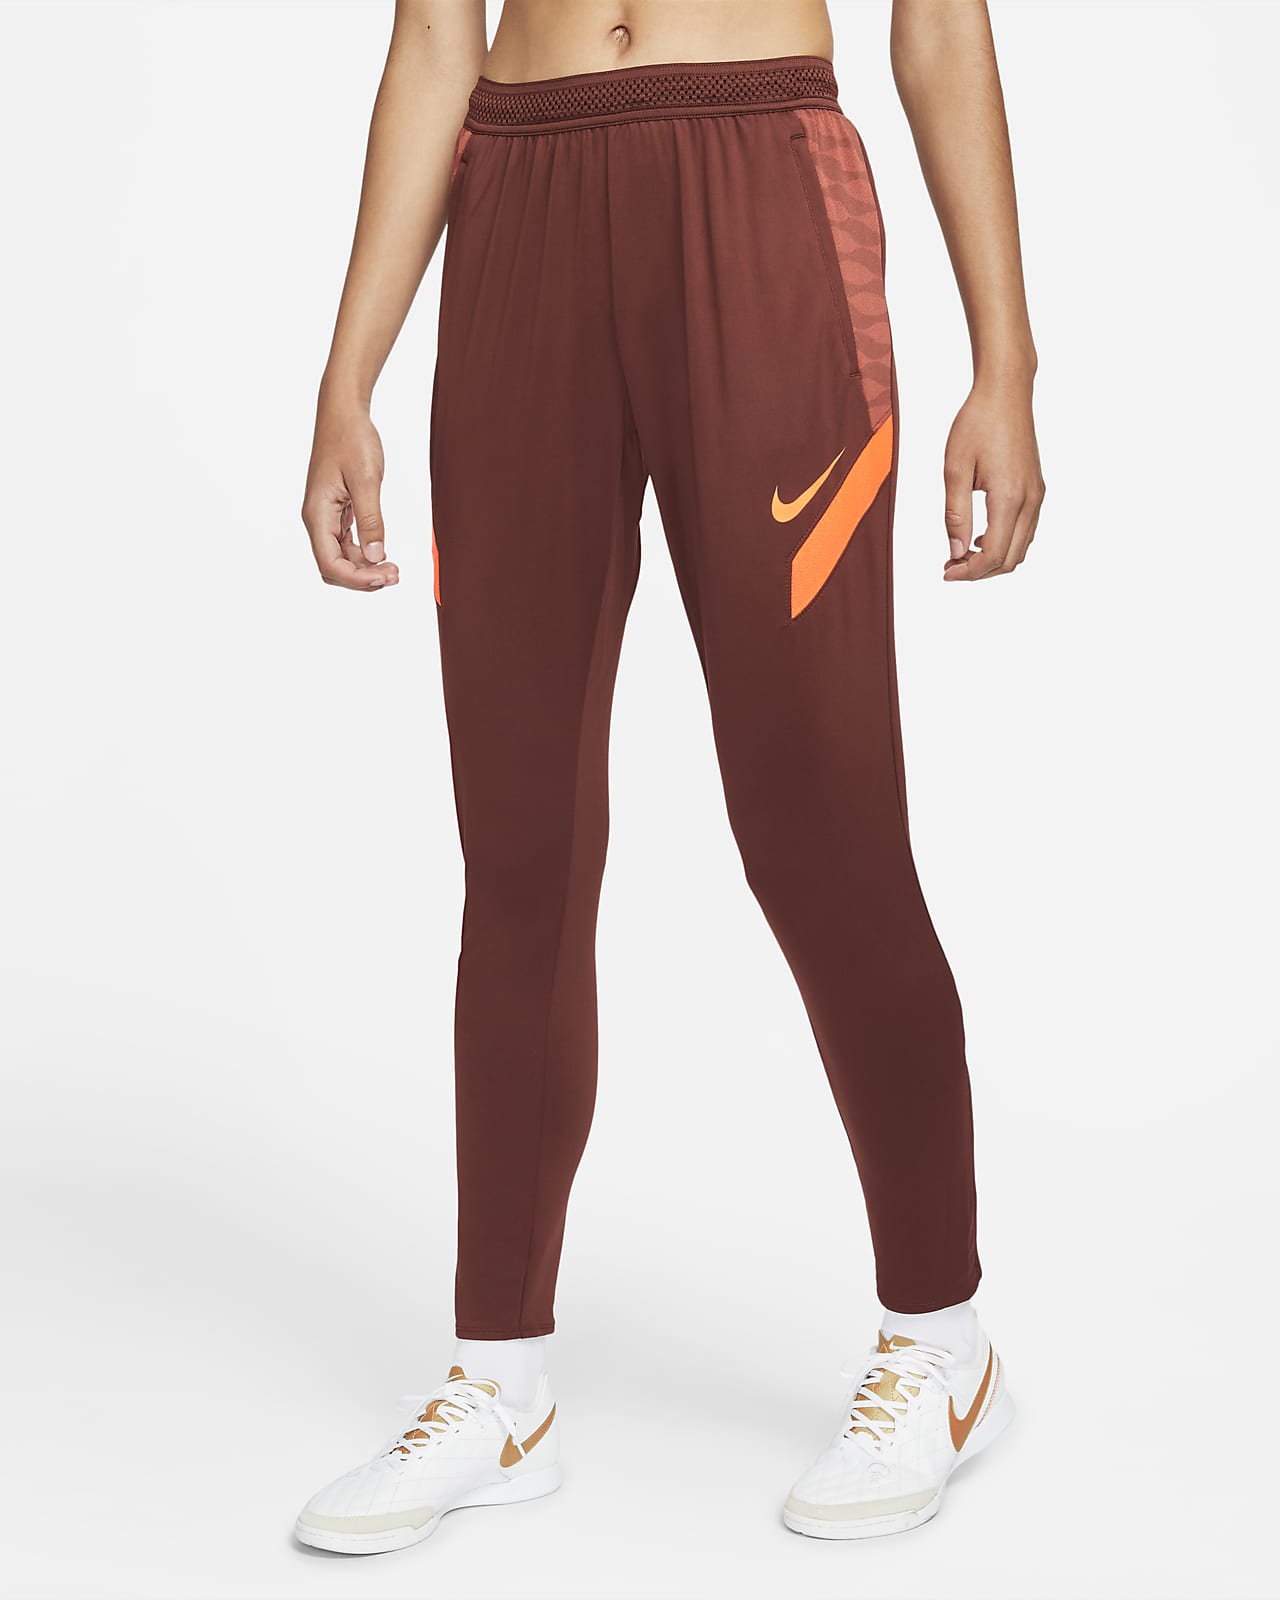 Pantalones fútbol para mujer Dri-FIT Strike. Nike.com